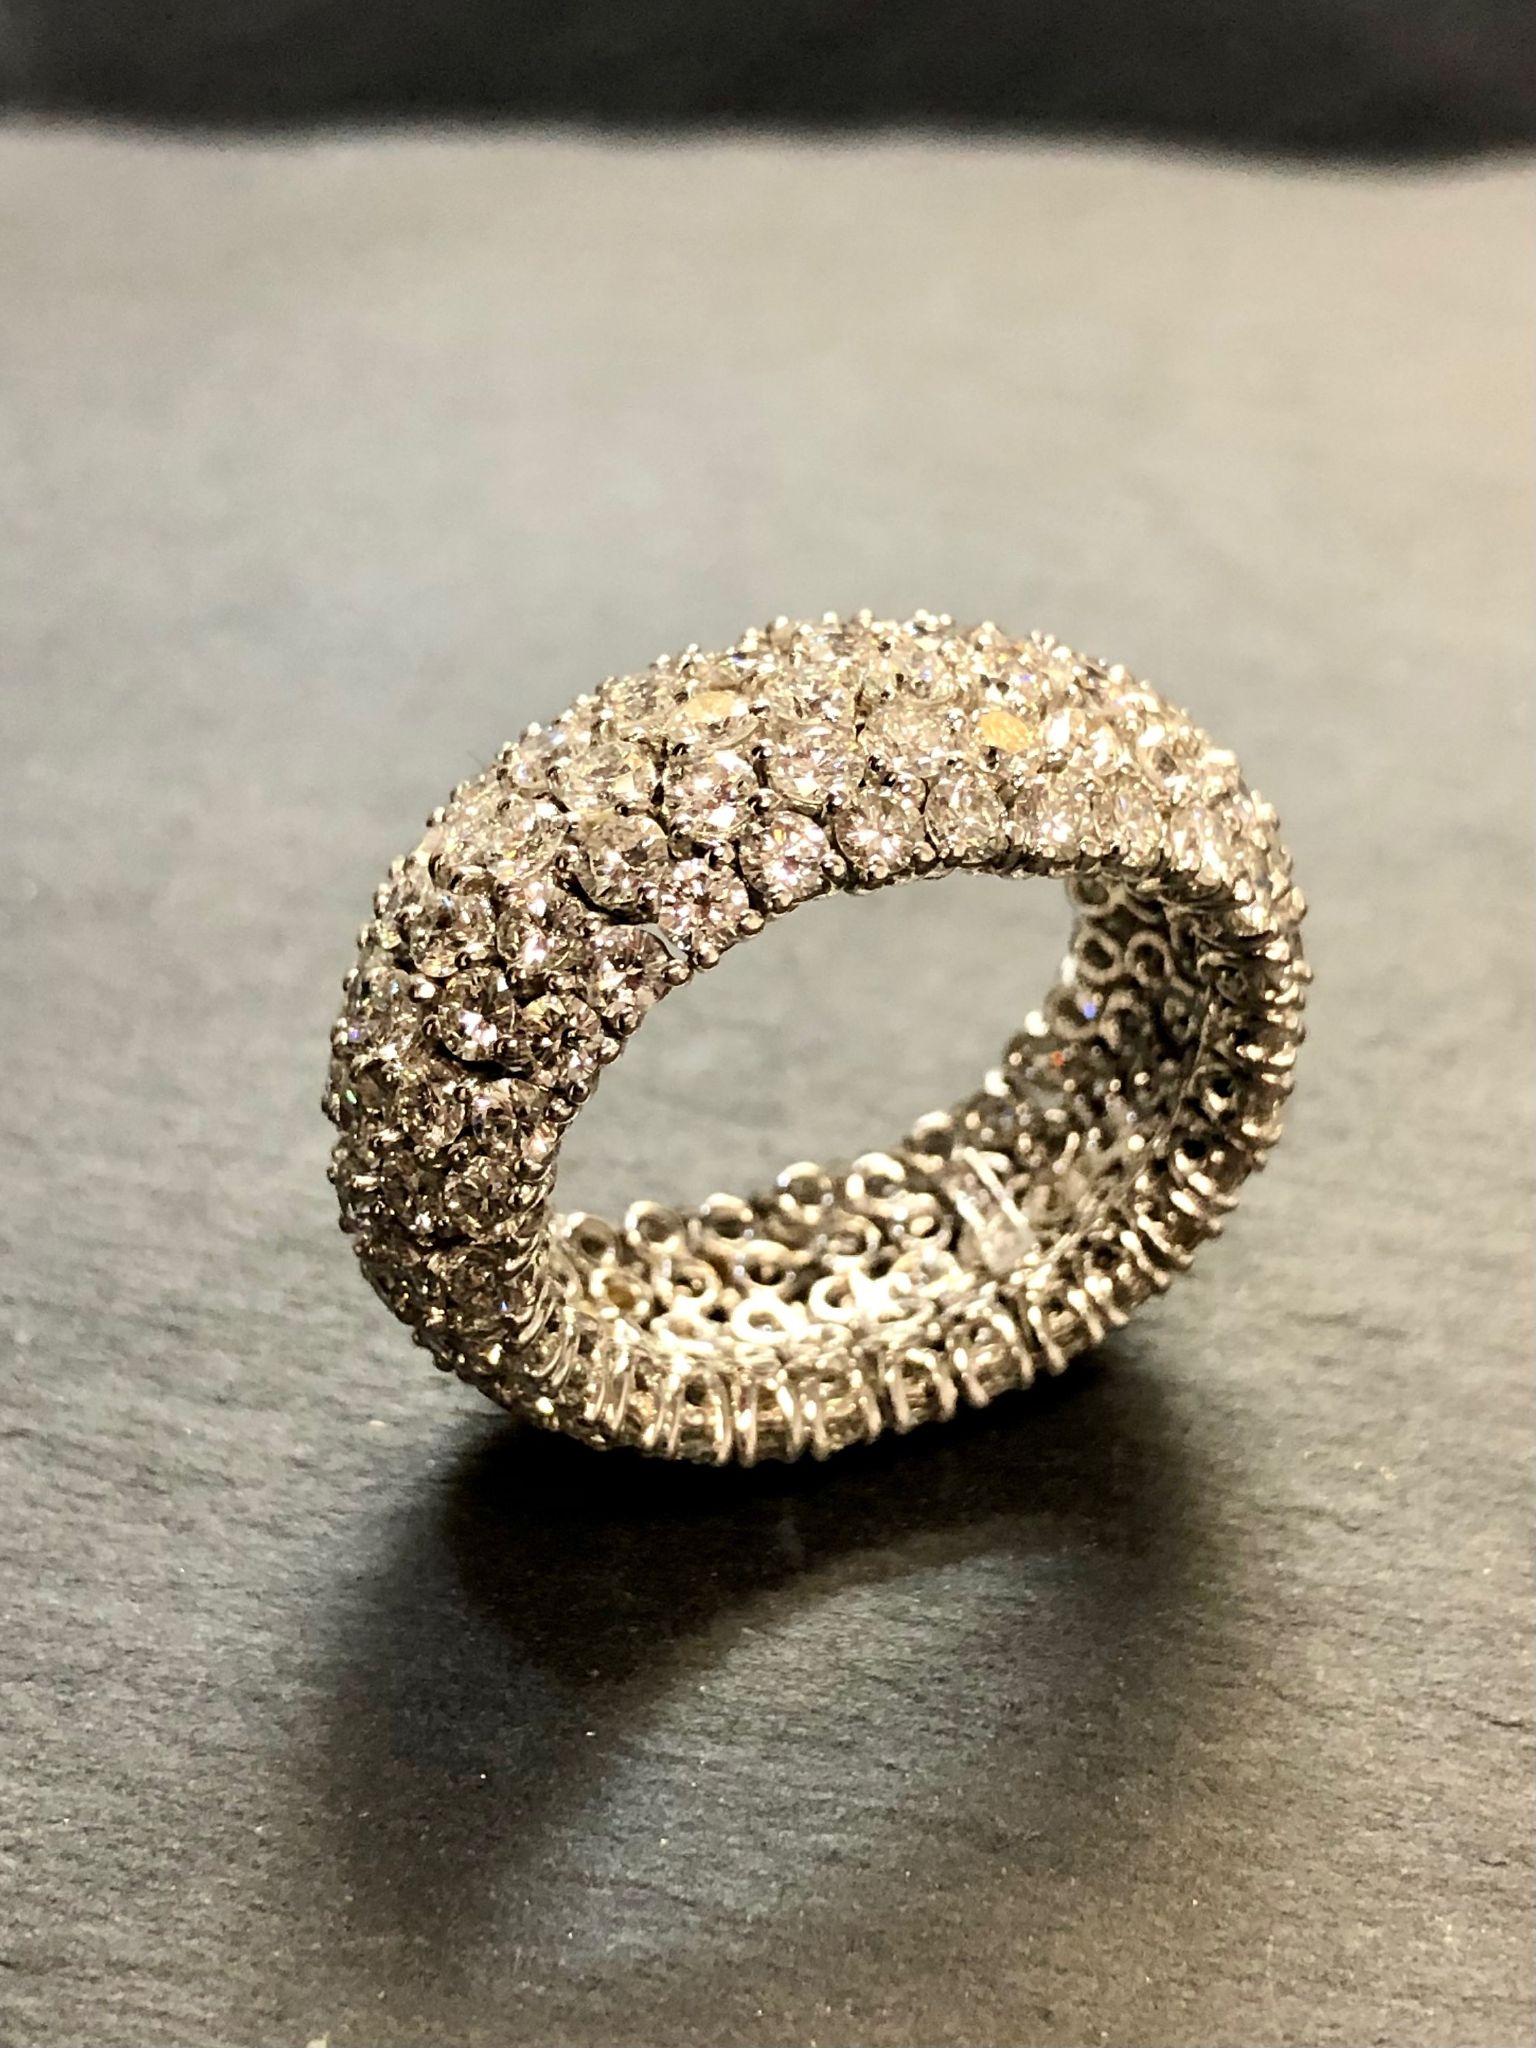 Une large bande flexible magnifiquement réalisée en 18K et sertie individuellement d'environ 7cttw de diamants ronds de couleur H-J Vs1-Si1 et de clarté.

Dimensions / Poids
10,50 mm de large. Taille 6. Poids 6.4dwt.

Condit
Toutes les pierres sont